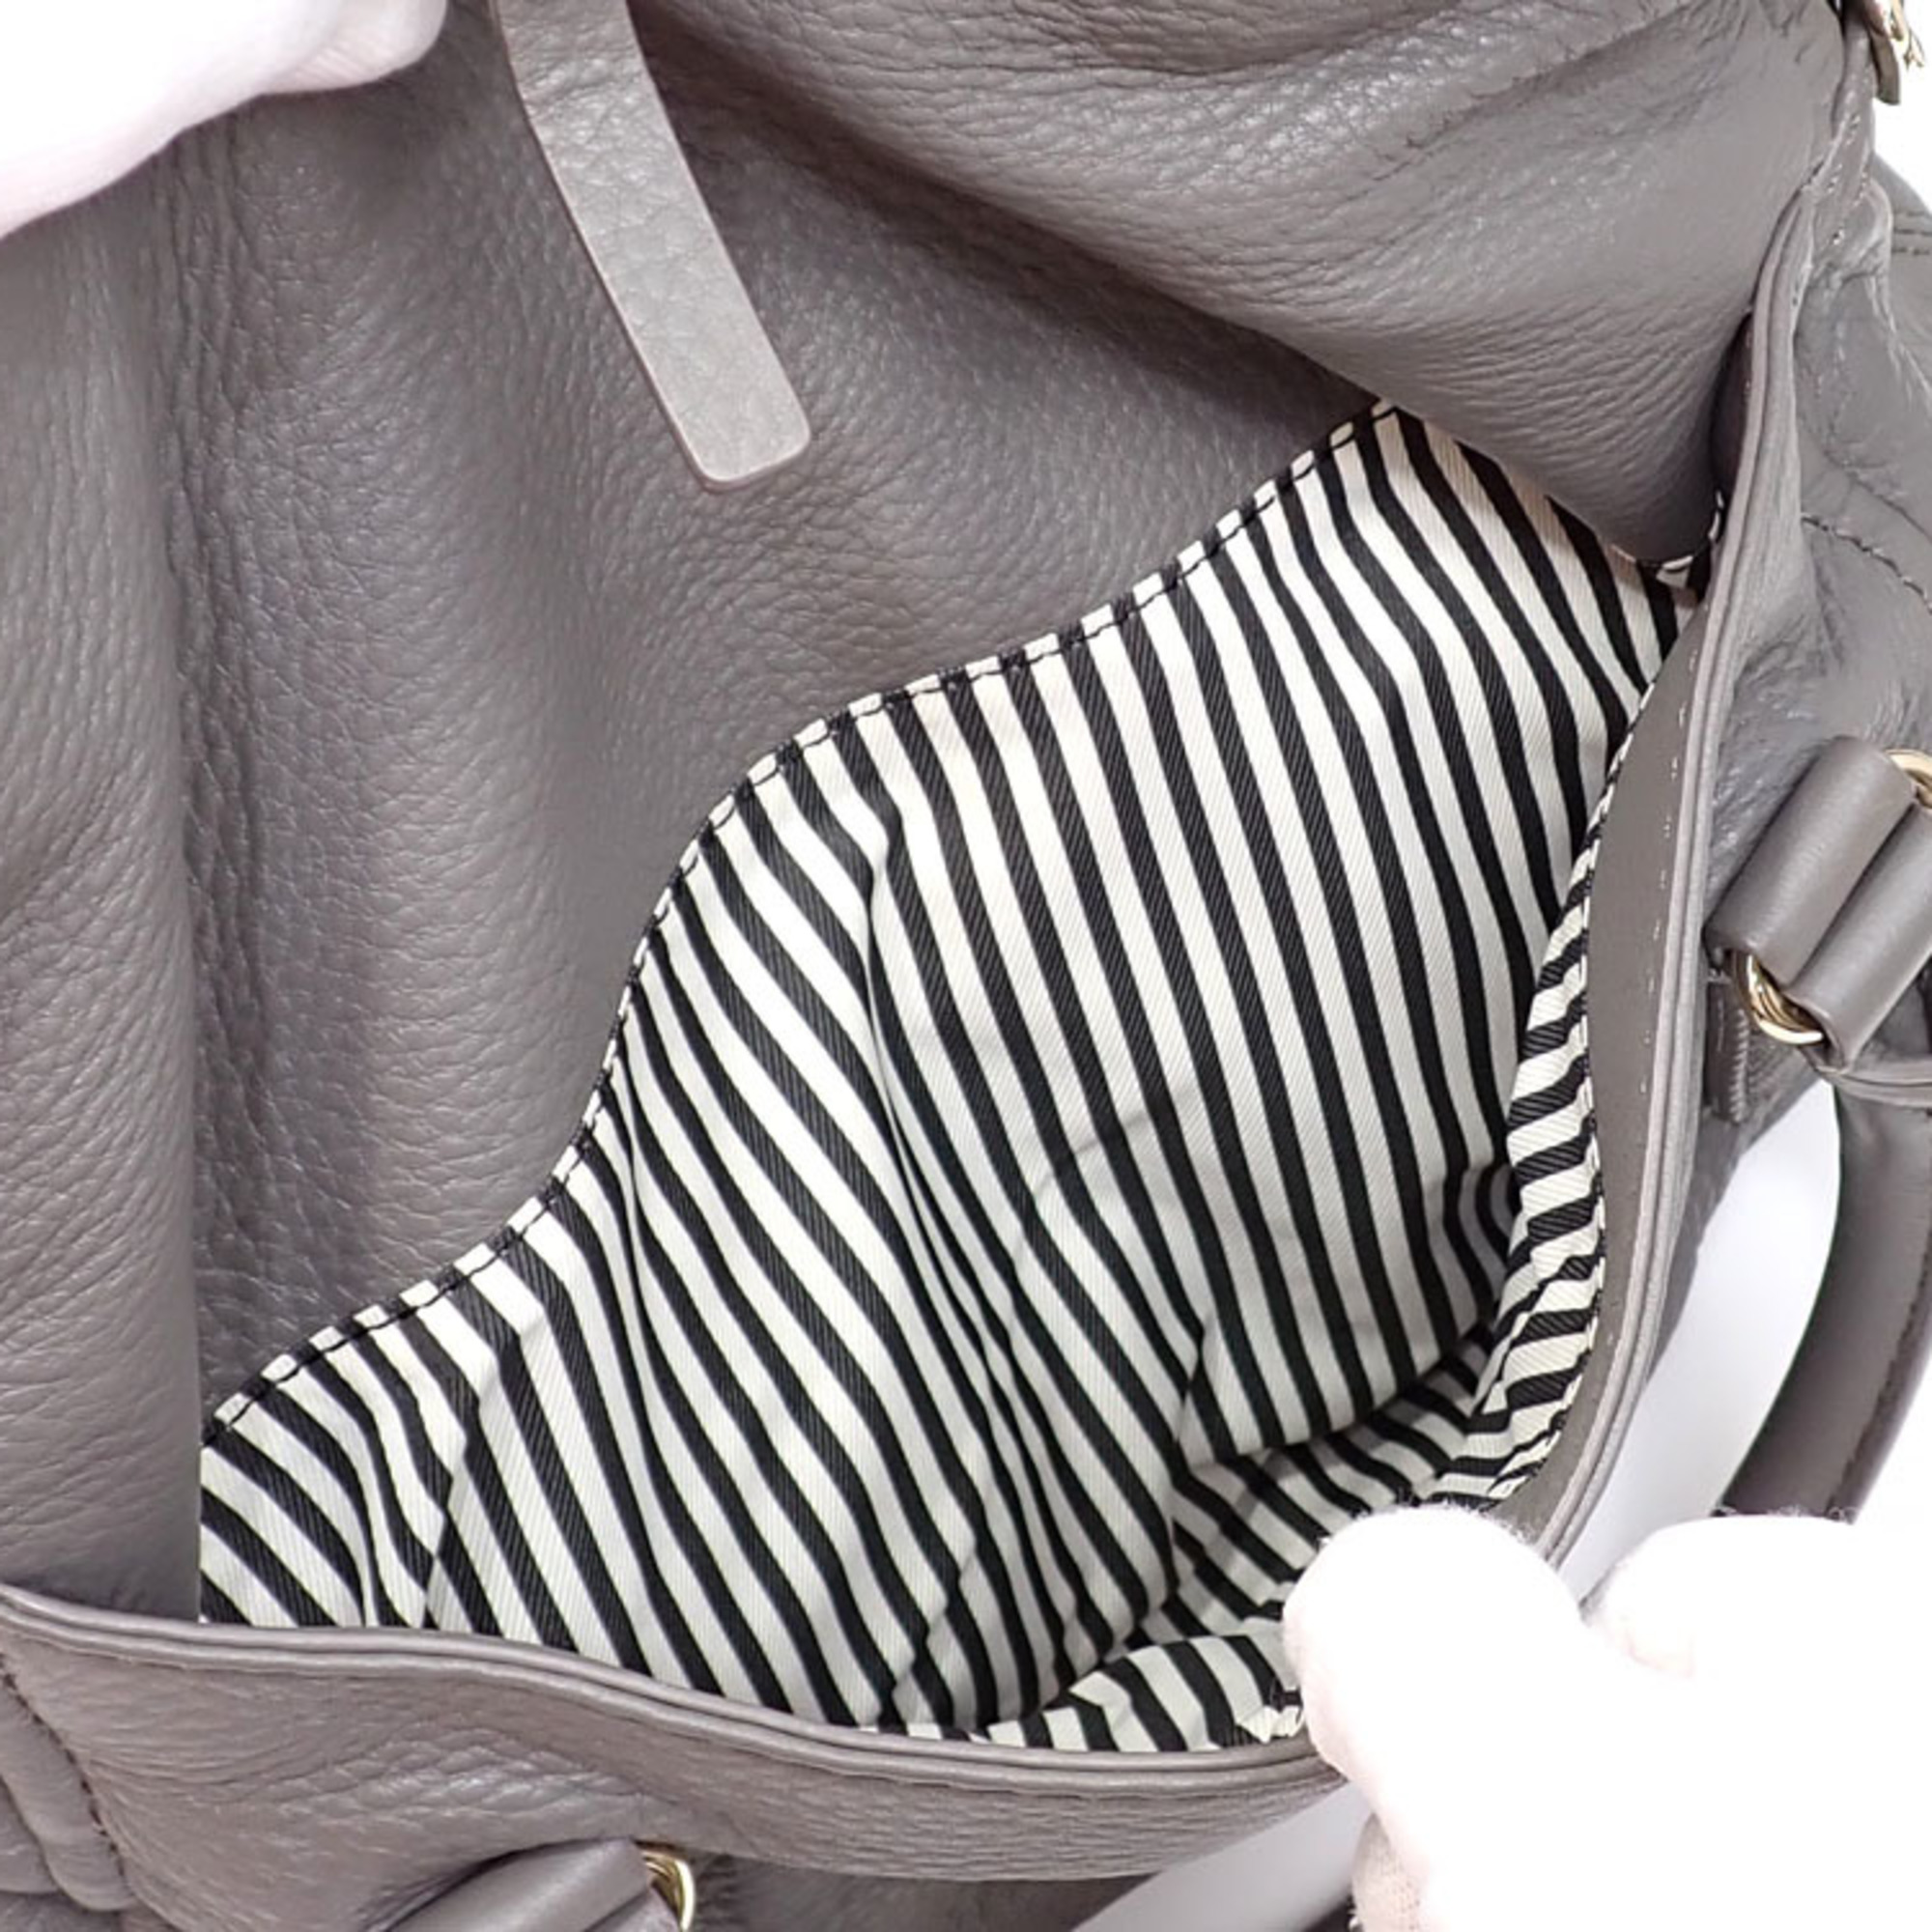 Kate Spade handbag for women, grey leather shoulder bag